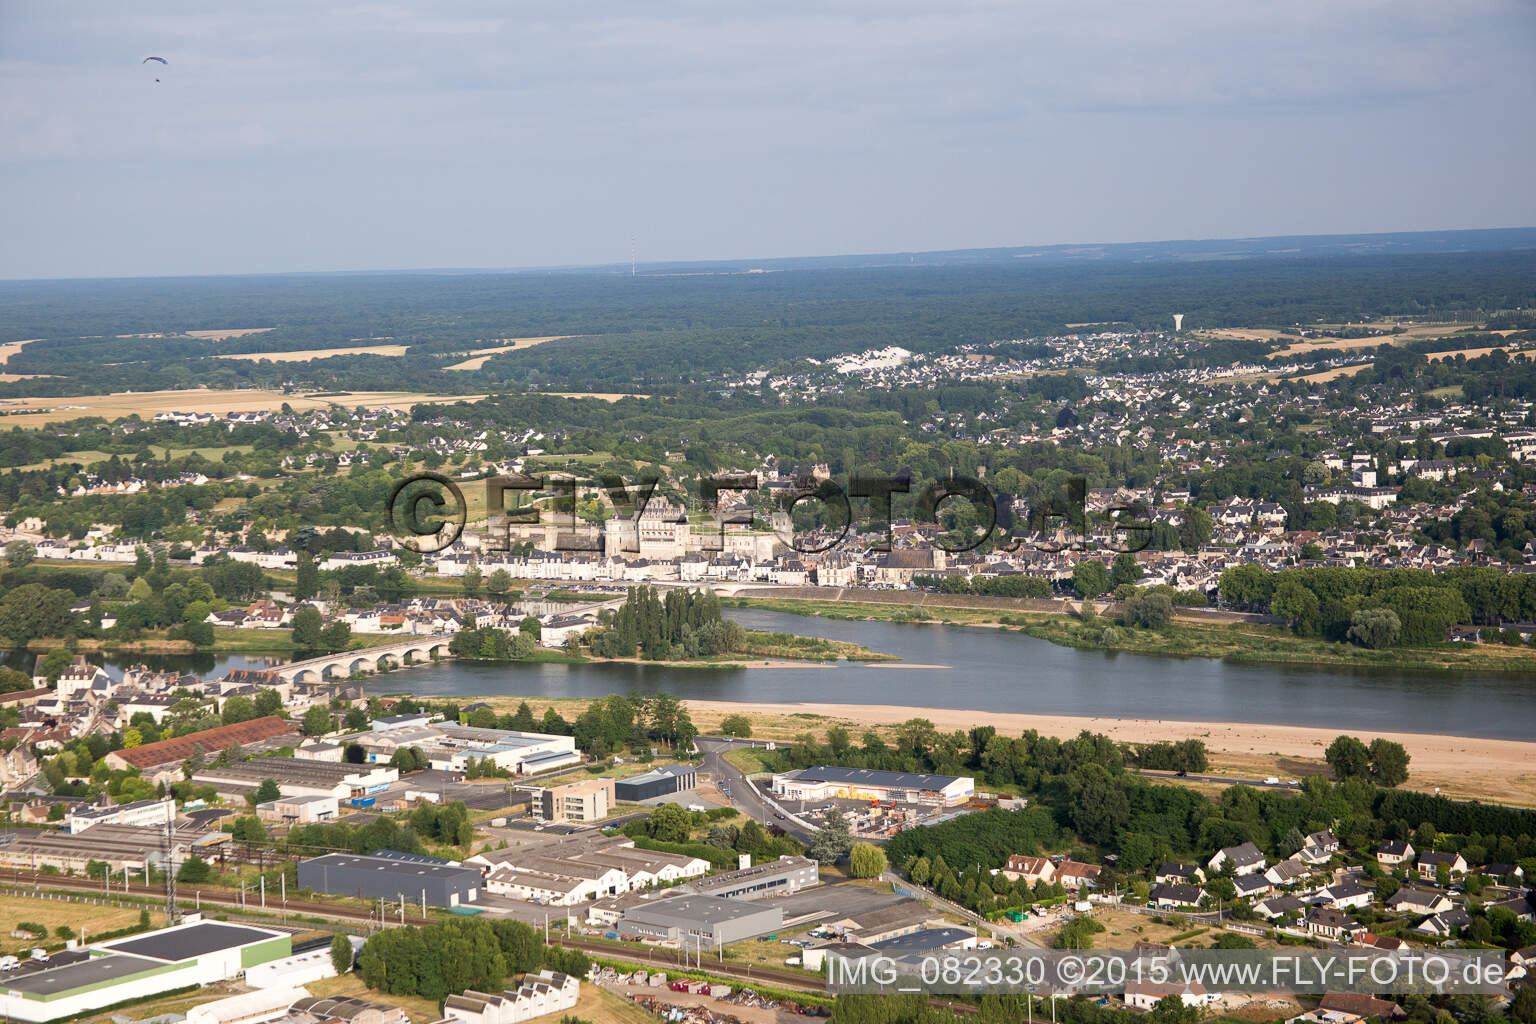 Vue aérienne de Amboise dans le département Indre et Loire, France